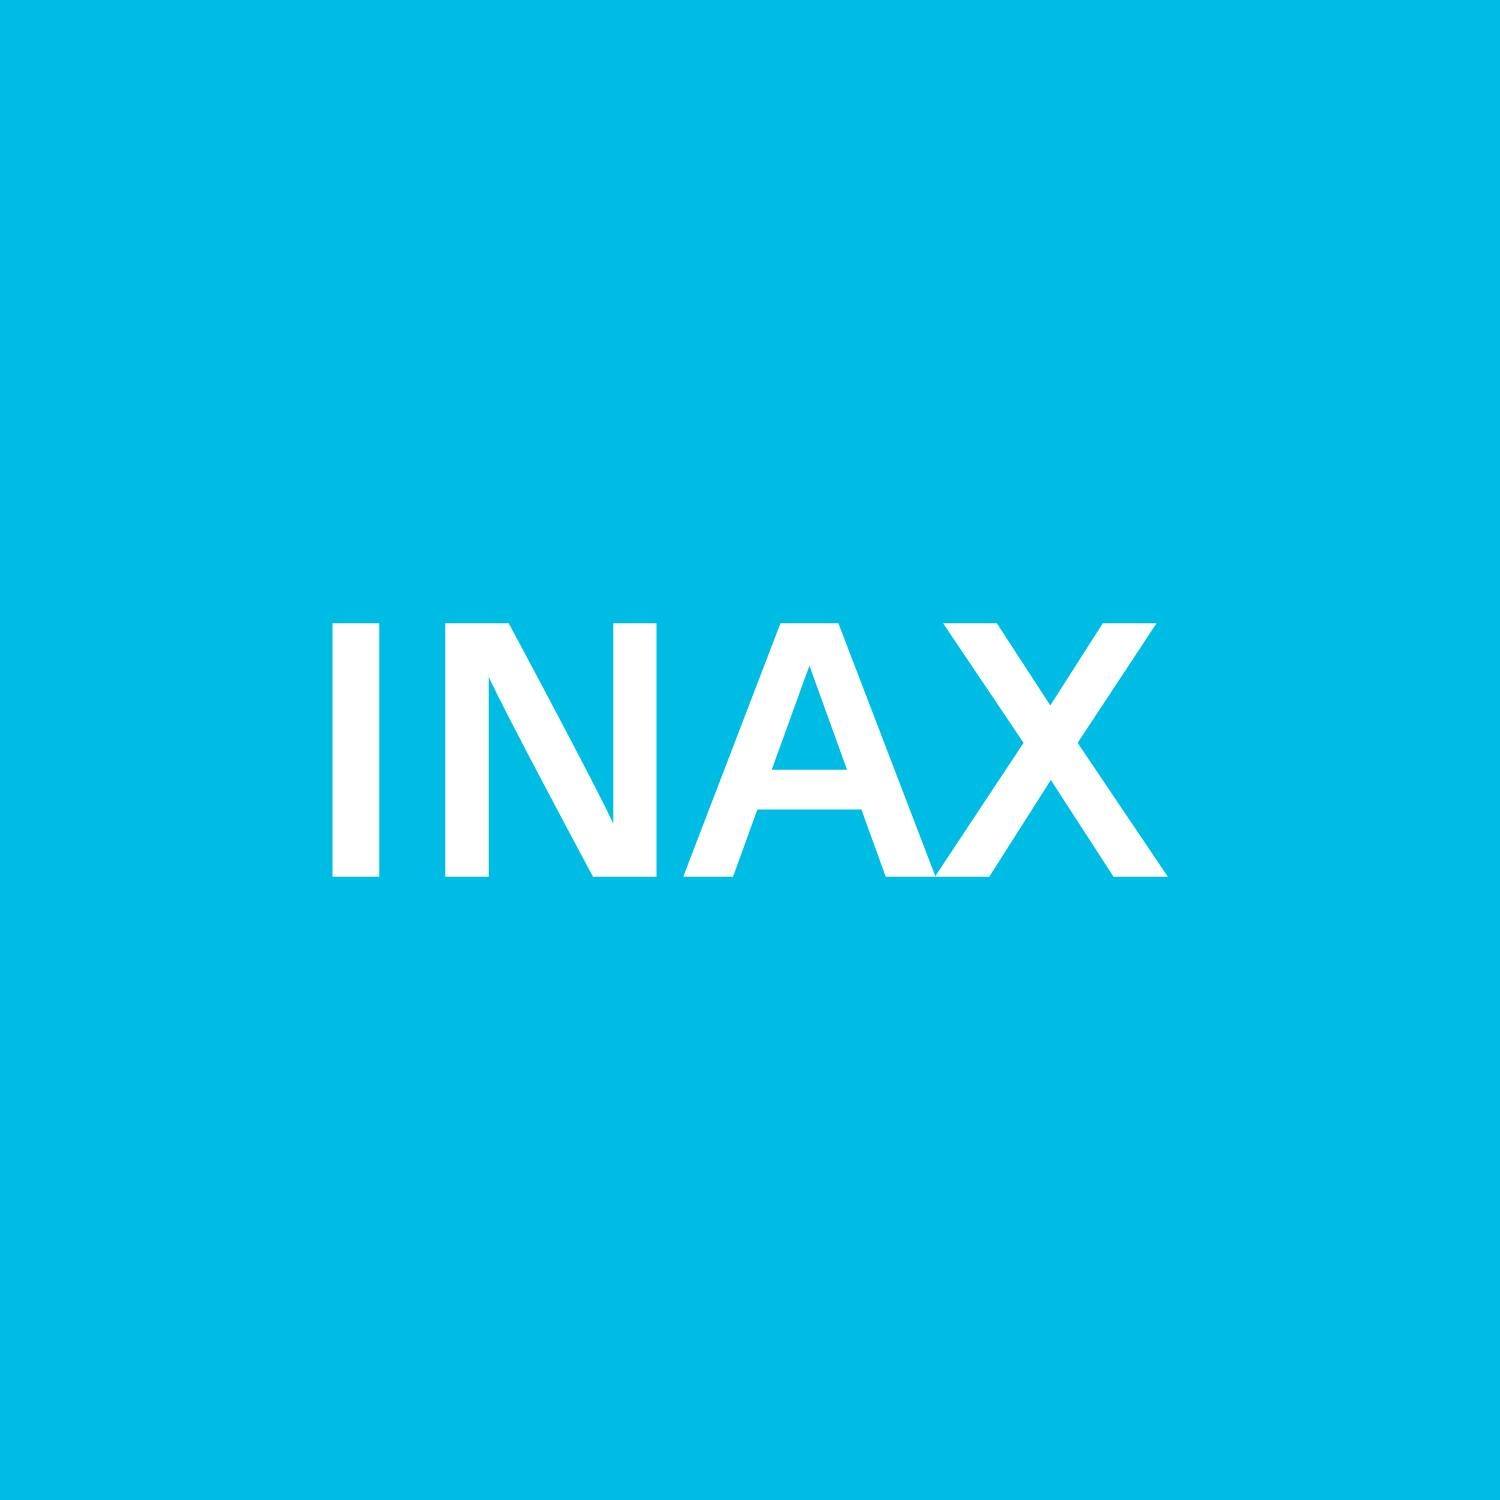 Inax thông báo dừng nhận và phản hồi tin nhắn theo tem xanh trên sản phẩm sen vòi